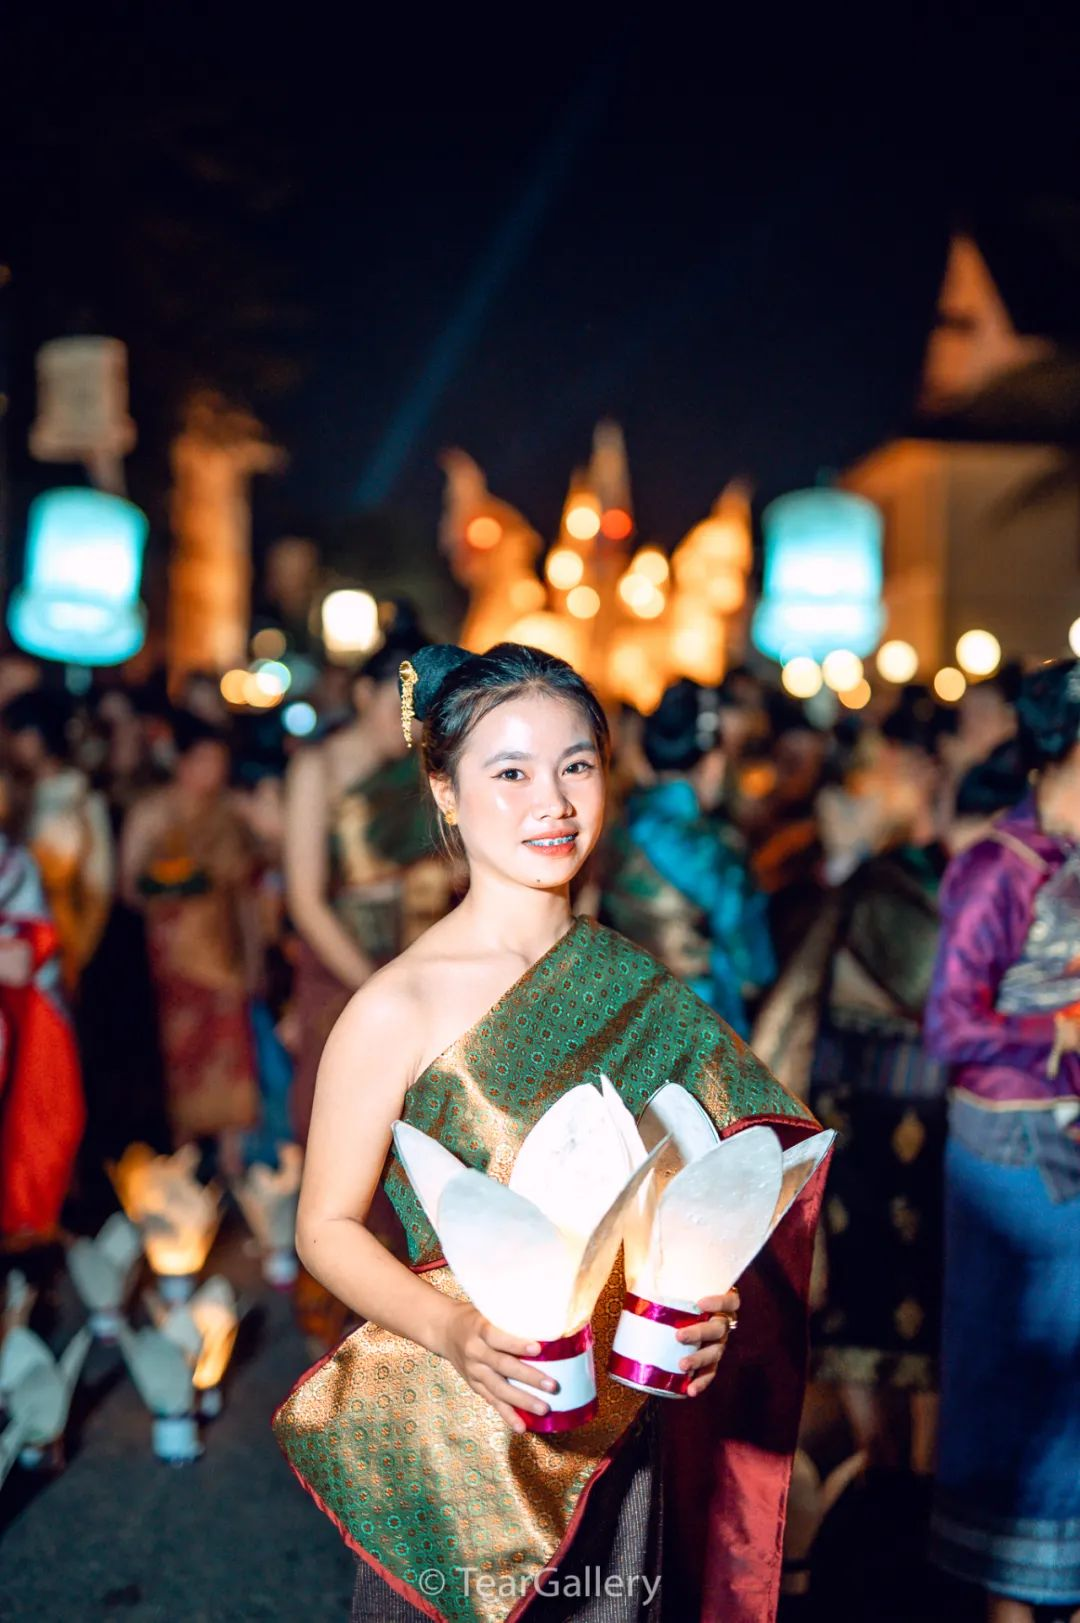 八种类型的老挝美女：混血型 少数民族型 乡村型 学生型 传统型...你喜欢哪一款？ - 知乎